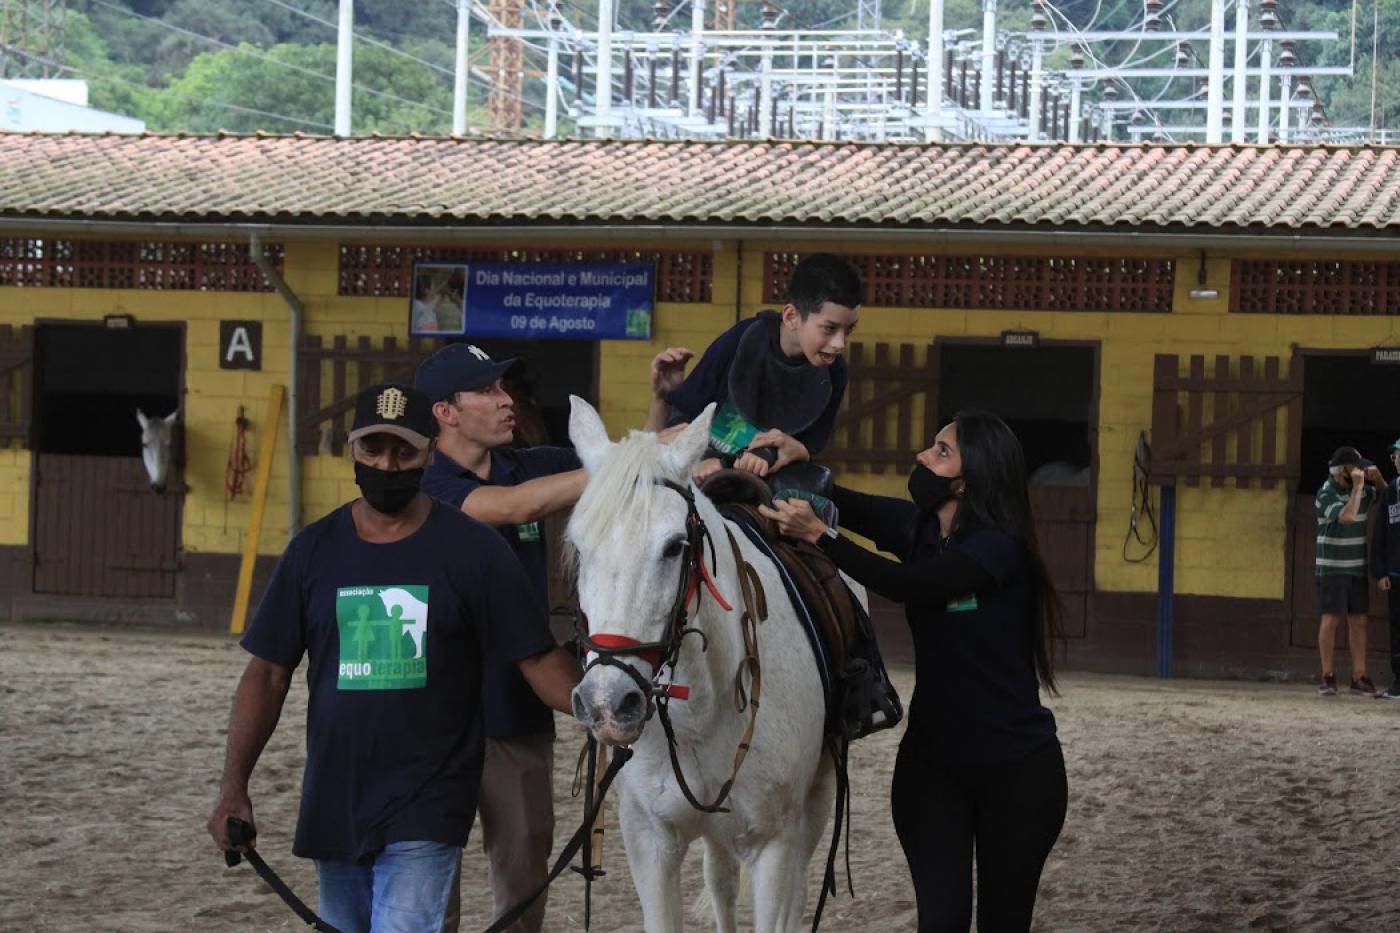 criança em cima do cavalo com pessoas acompanhando #paratodosverem